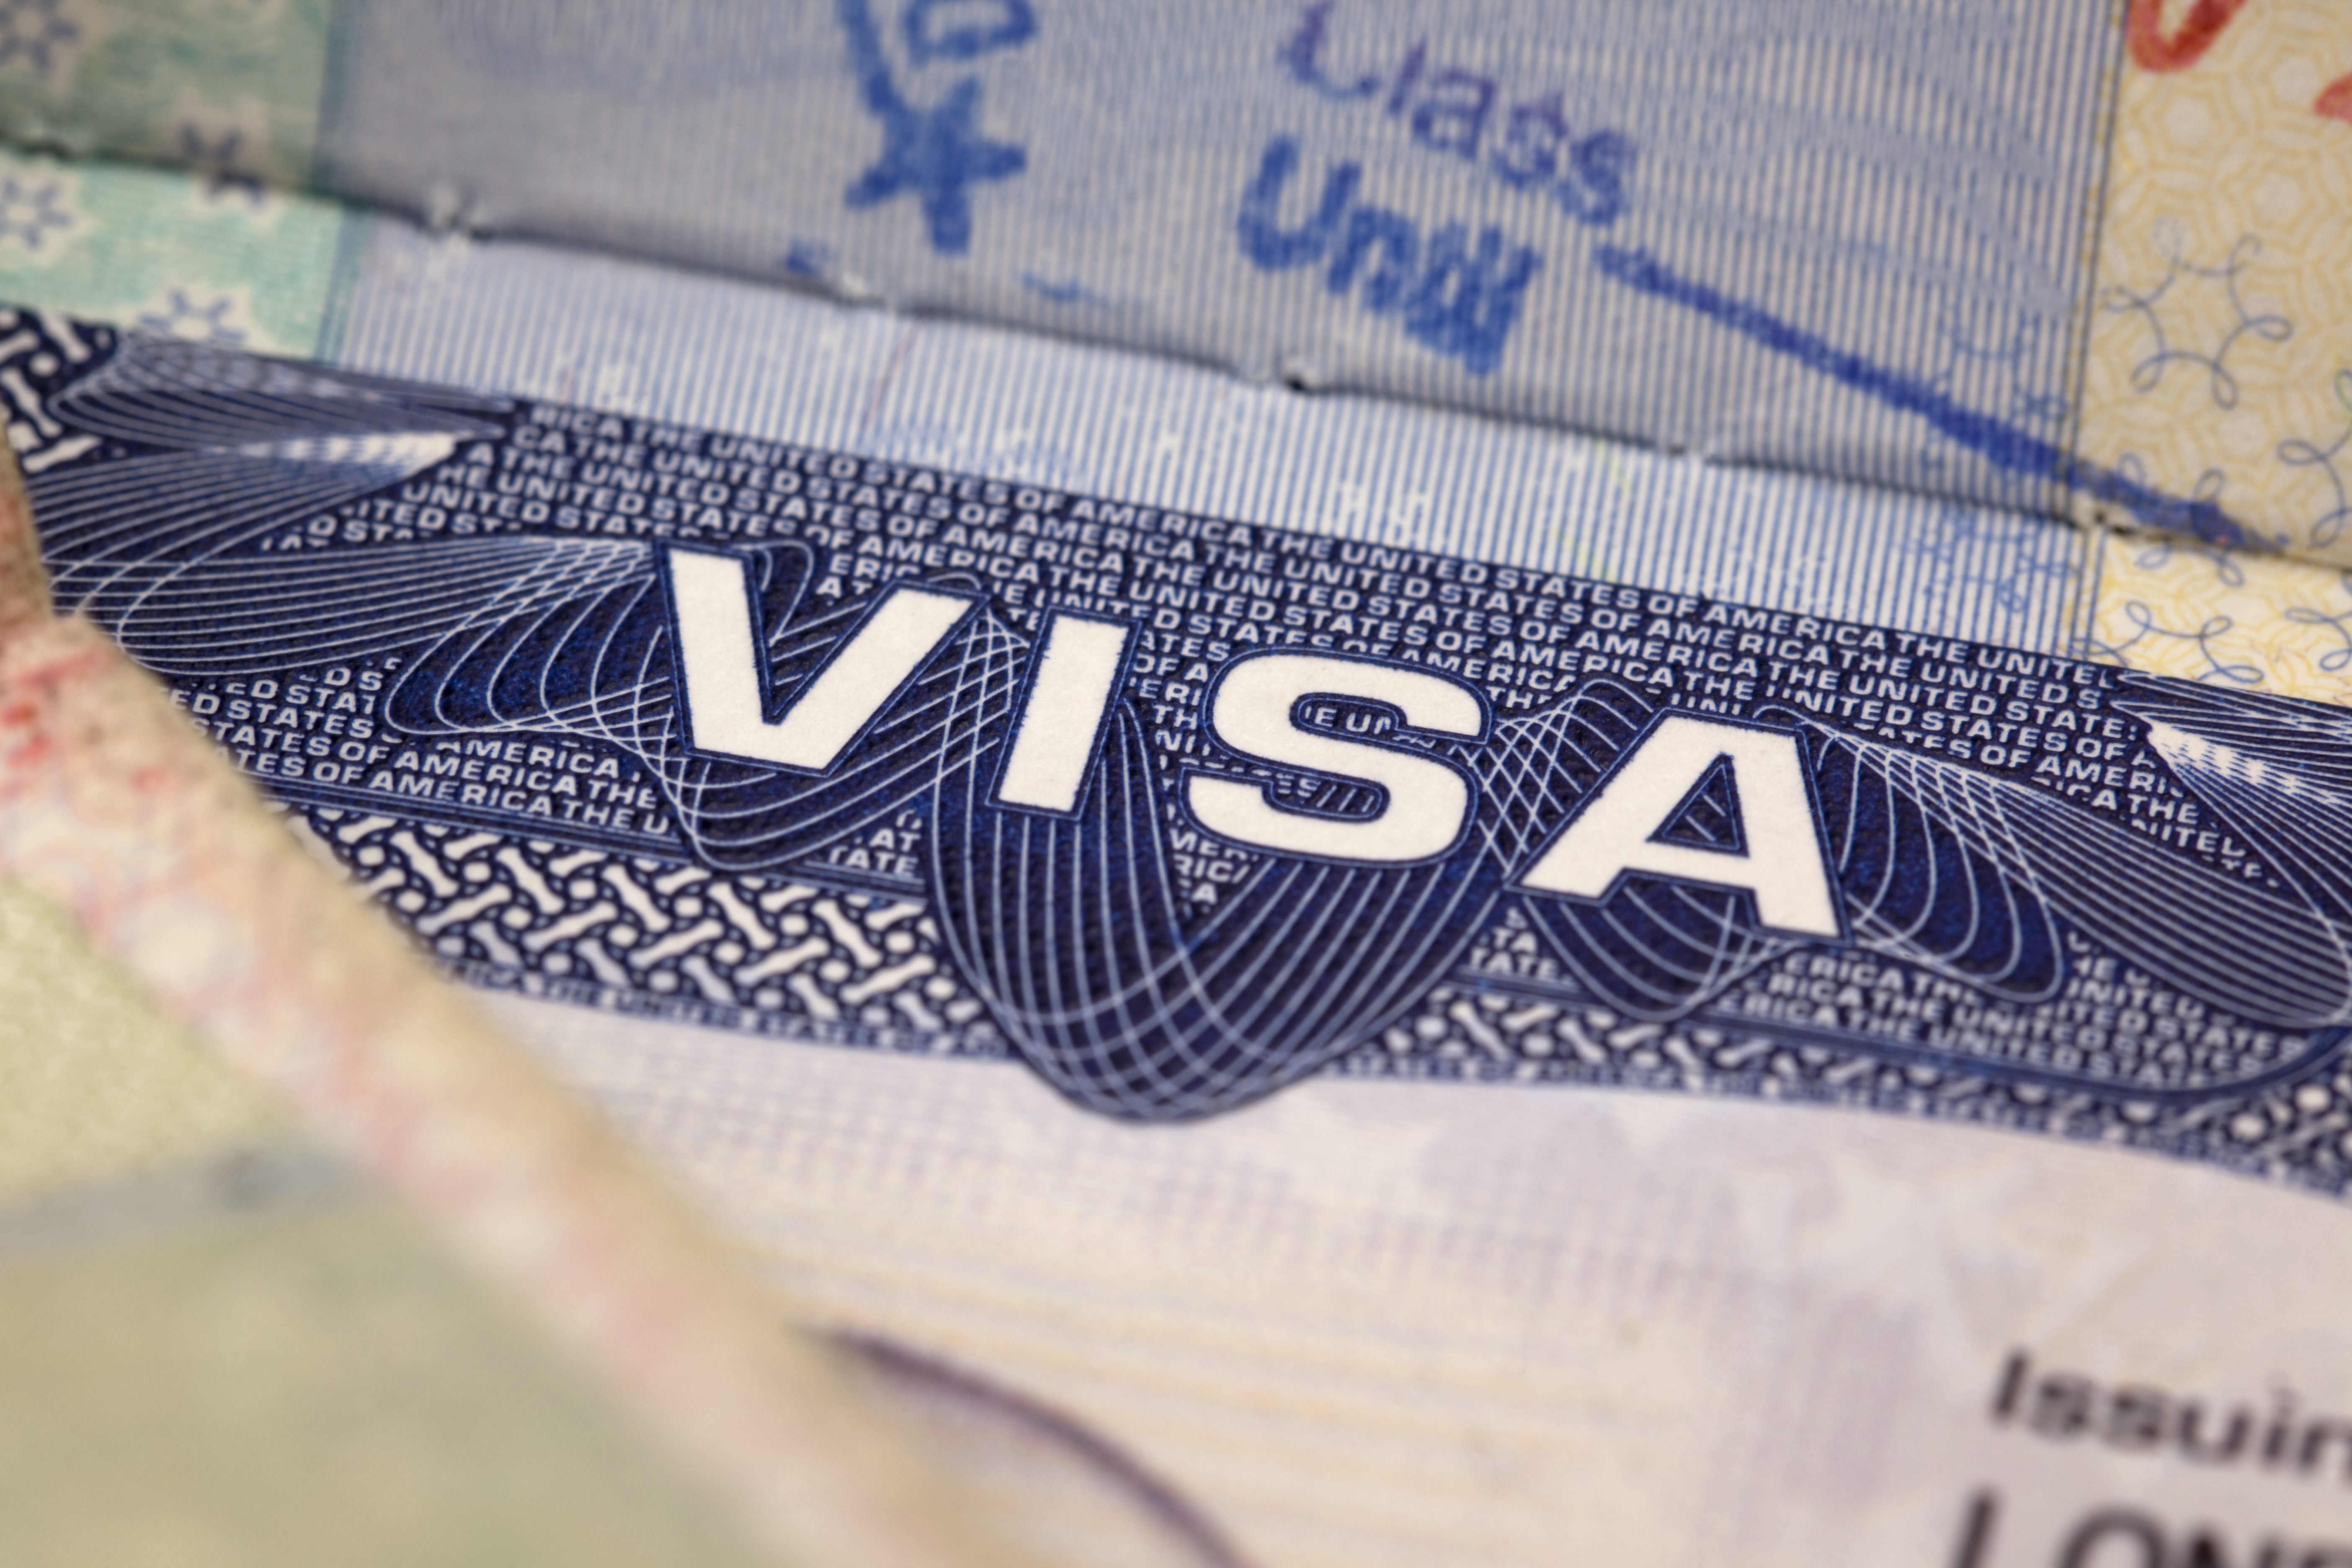 T me ccn visa. Международная виза. Туристическая виза. Виза в США. Шенгенская виза логотип.